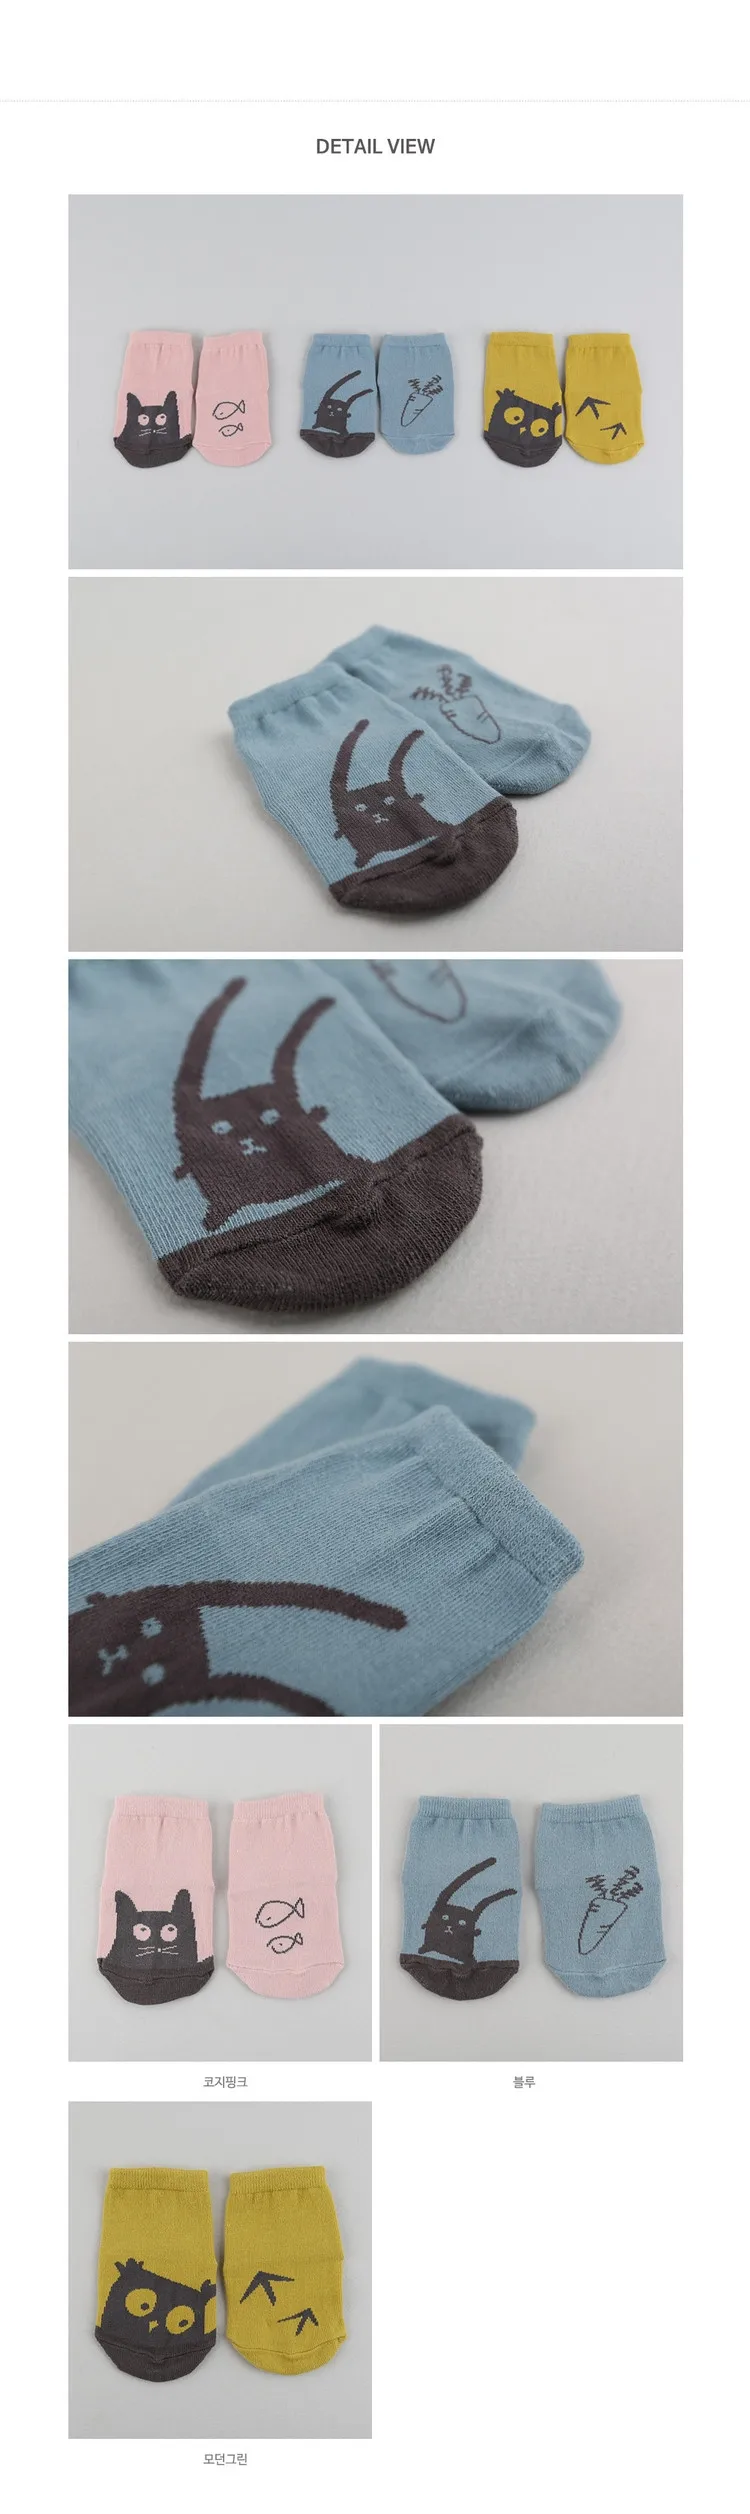 [Bosudhsou.] C53# детей Костюмы наколенник От 0 до 4 лет Детские носки, новые модные носки с Микки Маусом детские гольфы теплые гольфы для девочек